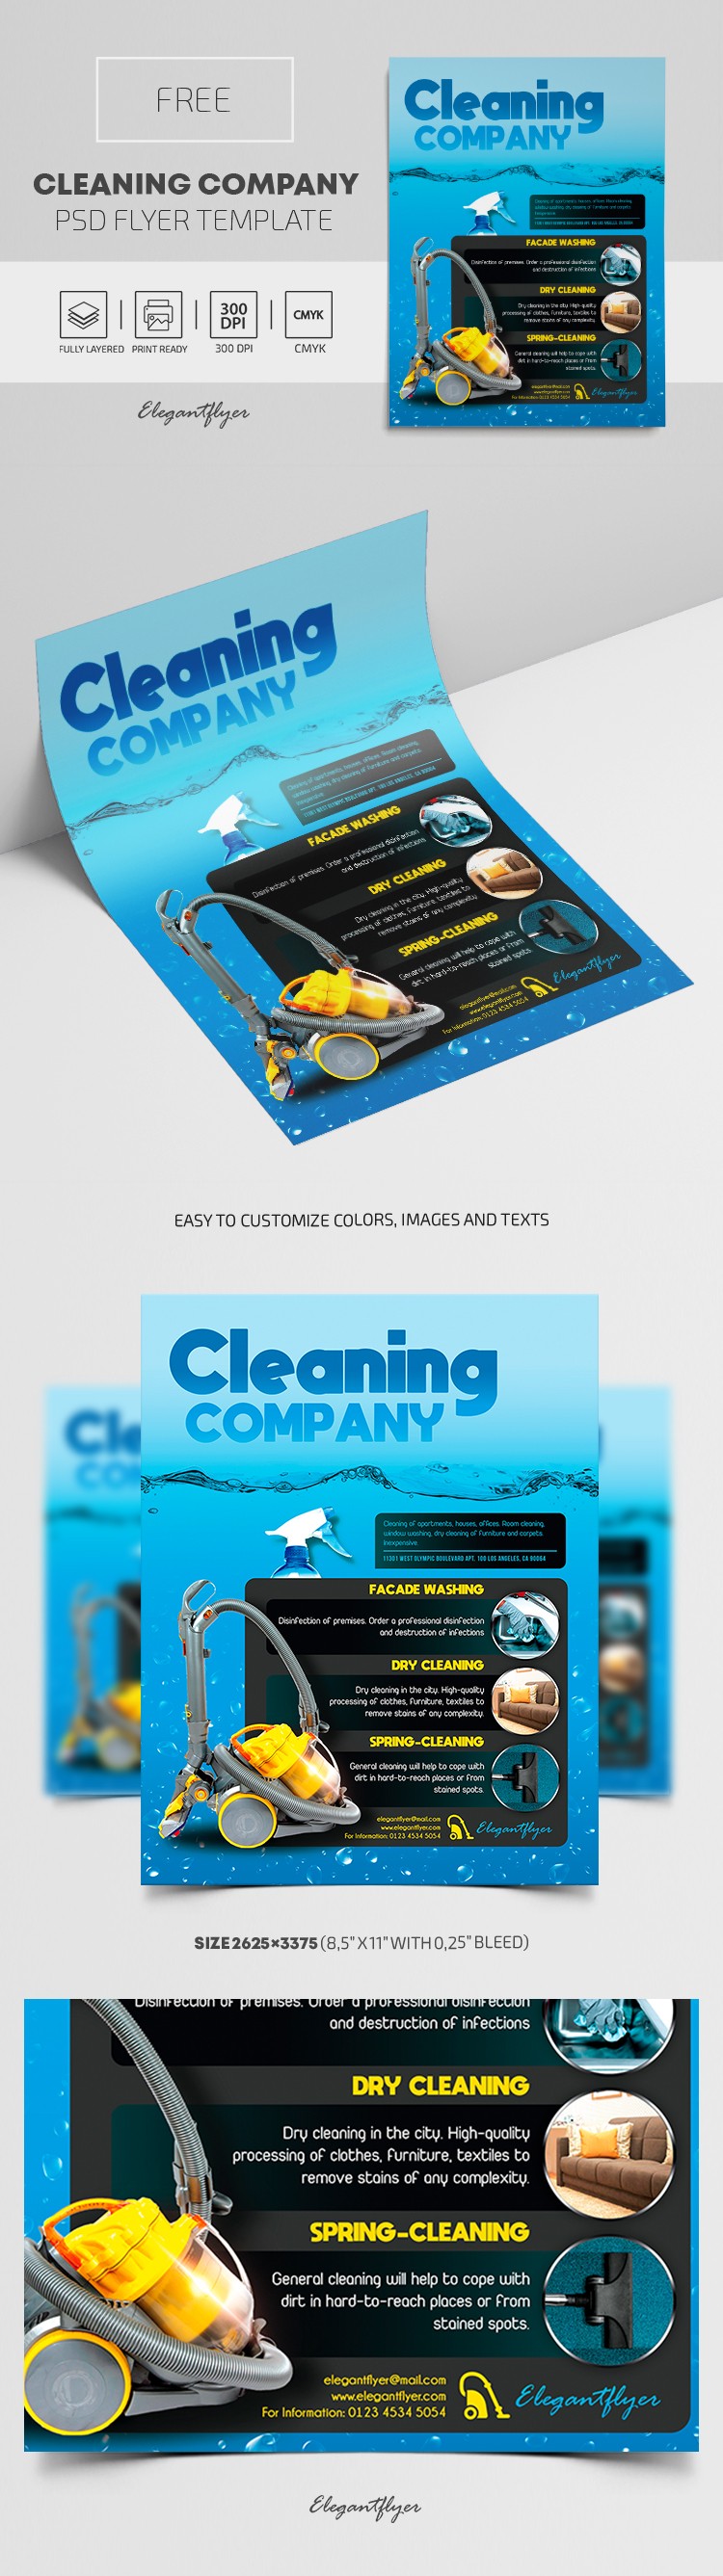 Empresa de limpieza by ElegantFlyer